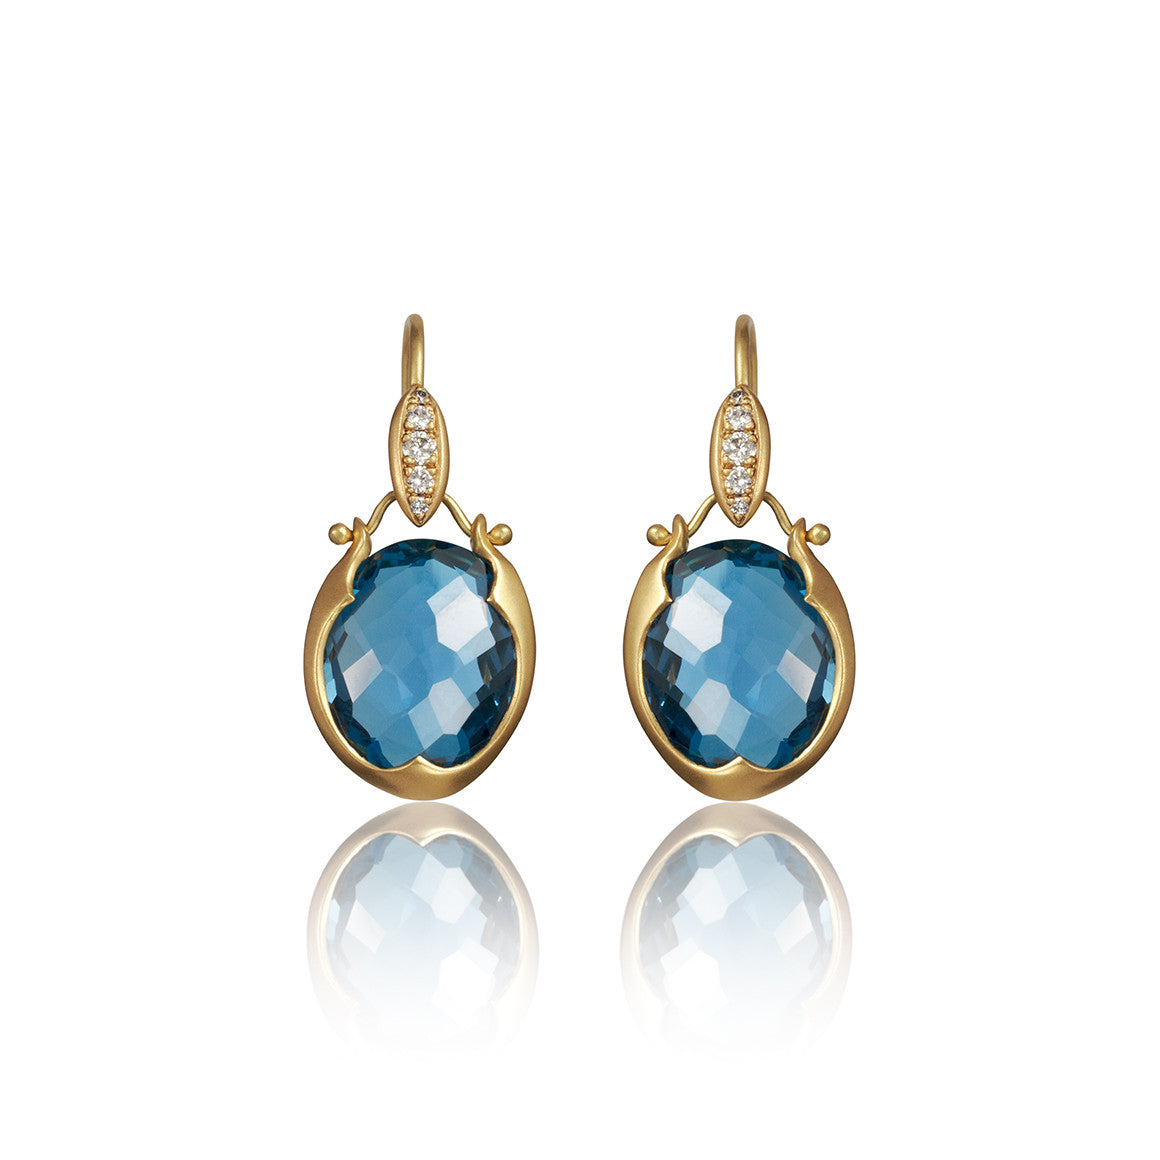 Lovebird Oval Drop Earrings with London Blue Topaz